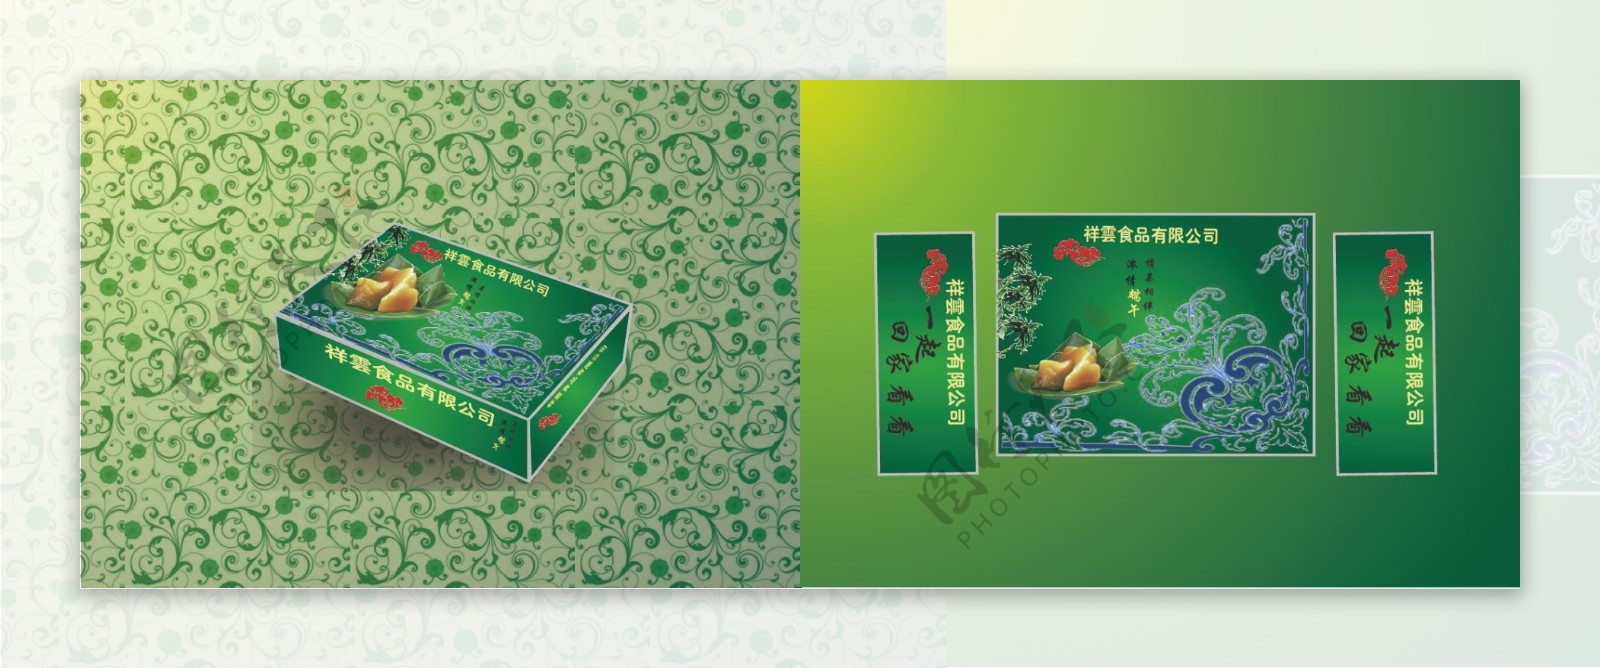 端午节粽子包装盒图片